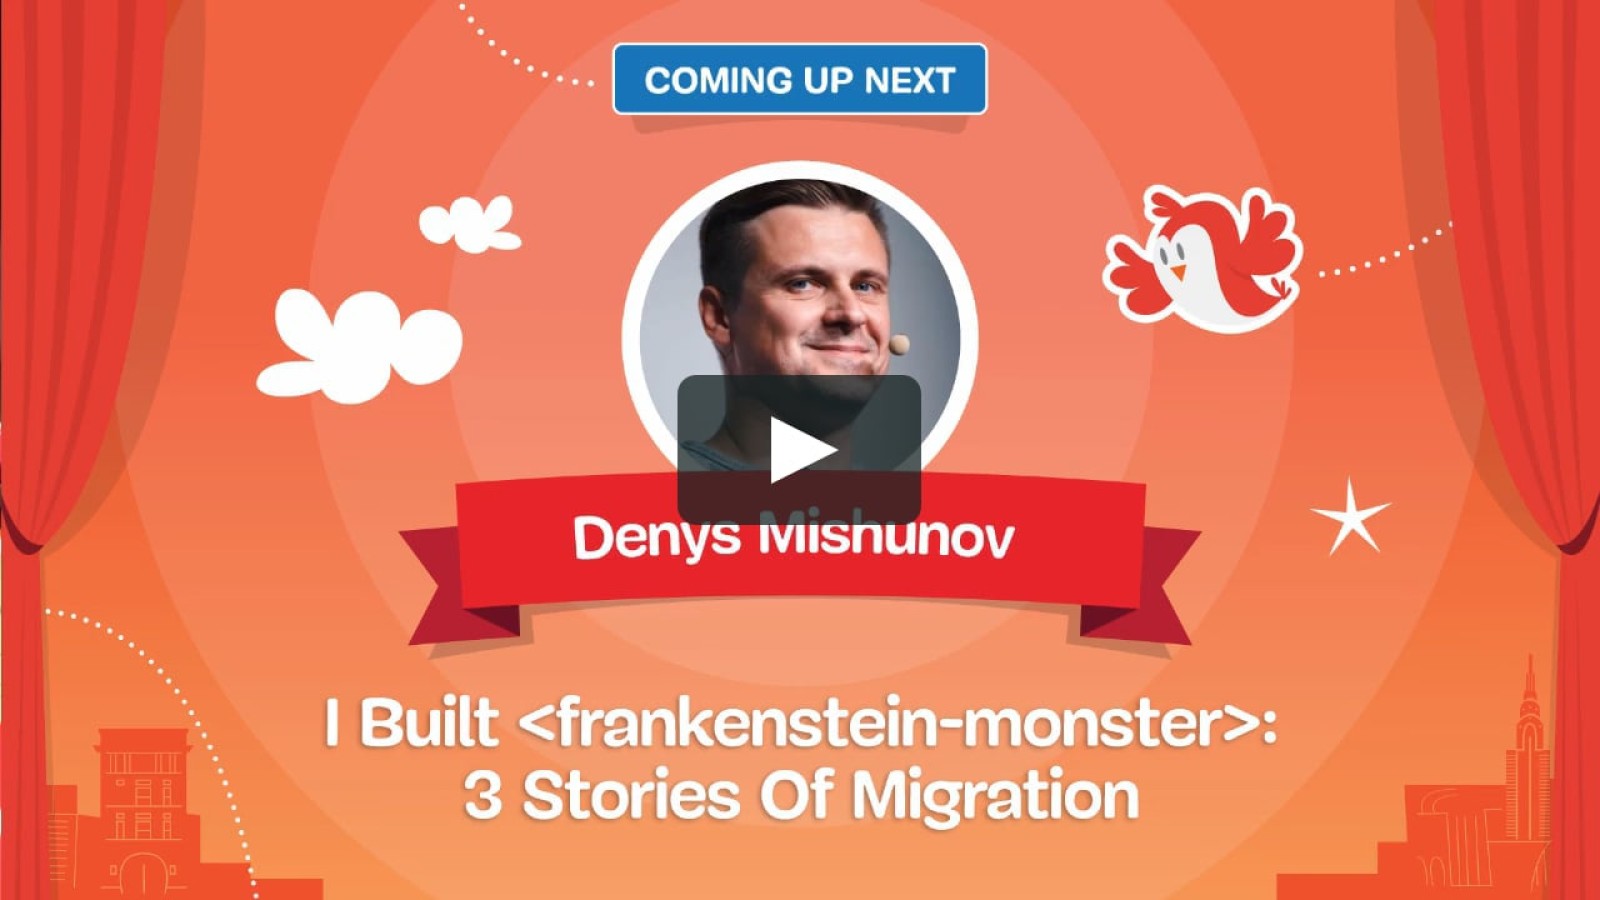 I built <frankenstein-monster>: 3 stories of migration